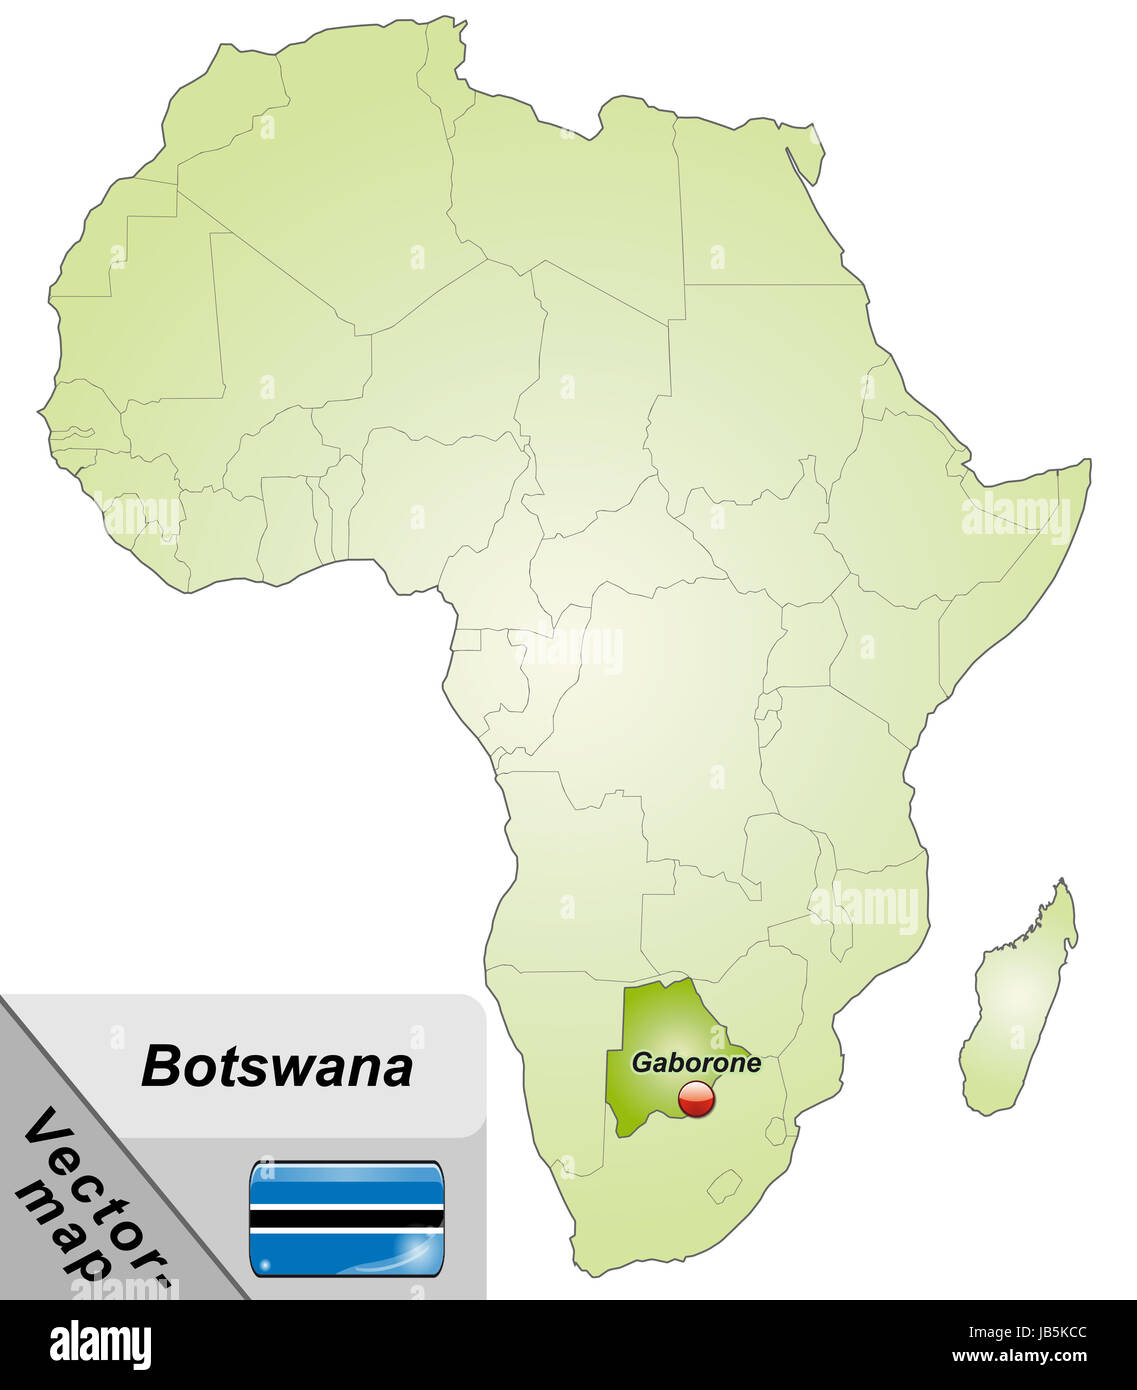 Le Botswana en Inselkarte Afrika als dans Grün. Durch die Gestaltung ansprechende fügt sich die Karte perfekt dans Ihr Vorhaben ein. Banque D'Images